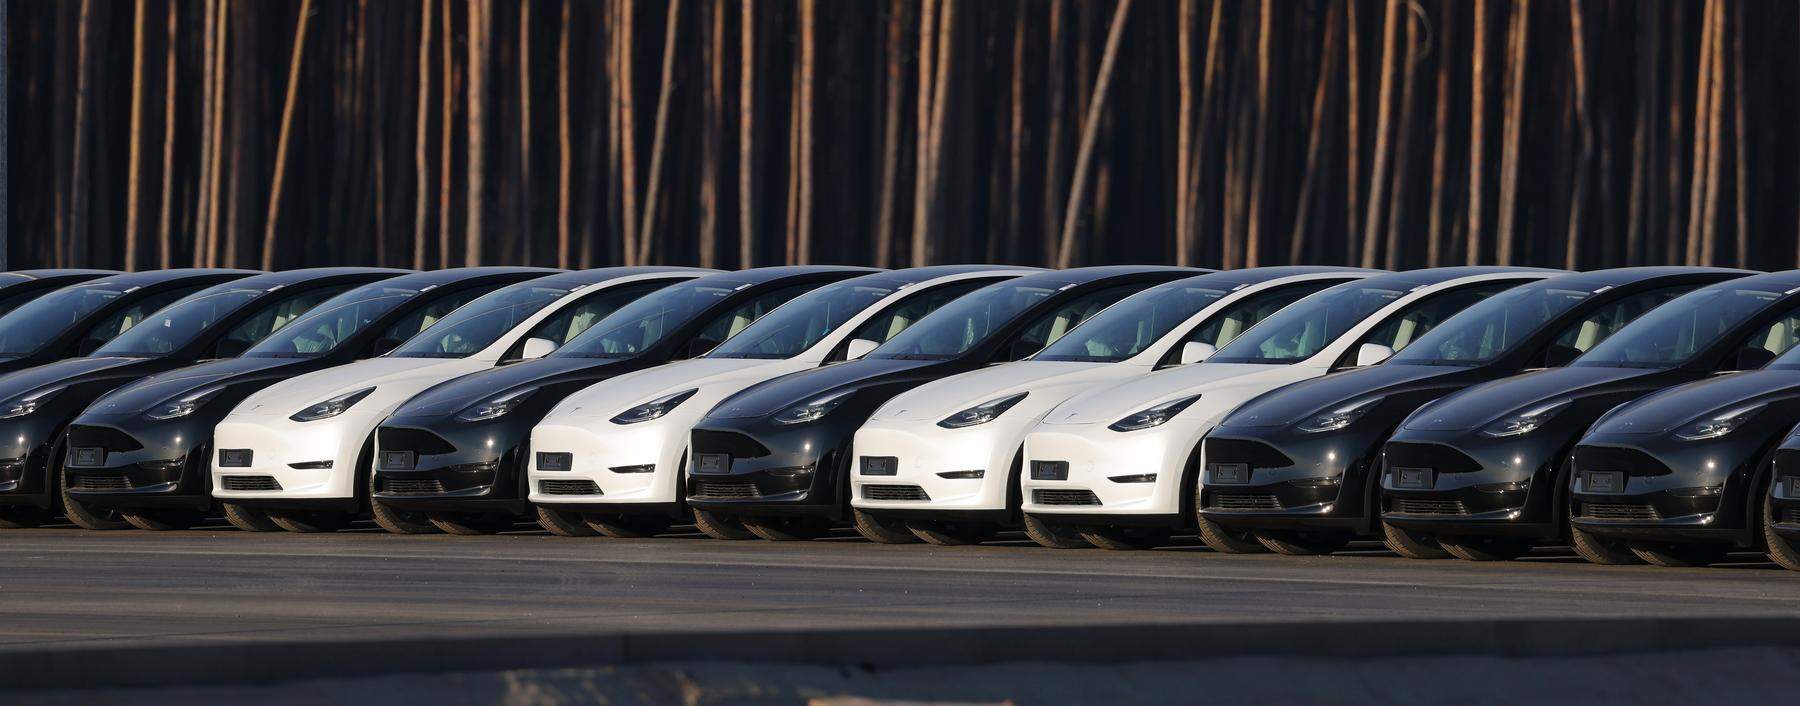 Auf Halde: An Europas Häfen stapeln sich chinesische E-Autos. Die Aufnahme von 2022 zeigt Teslas auf dem Fabriksgelände in Grünheide bei Berlin. 